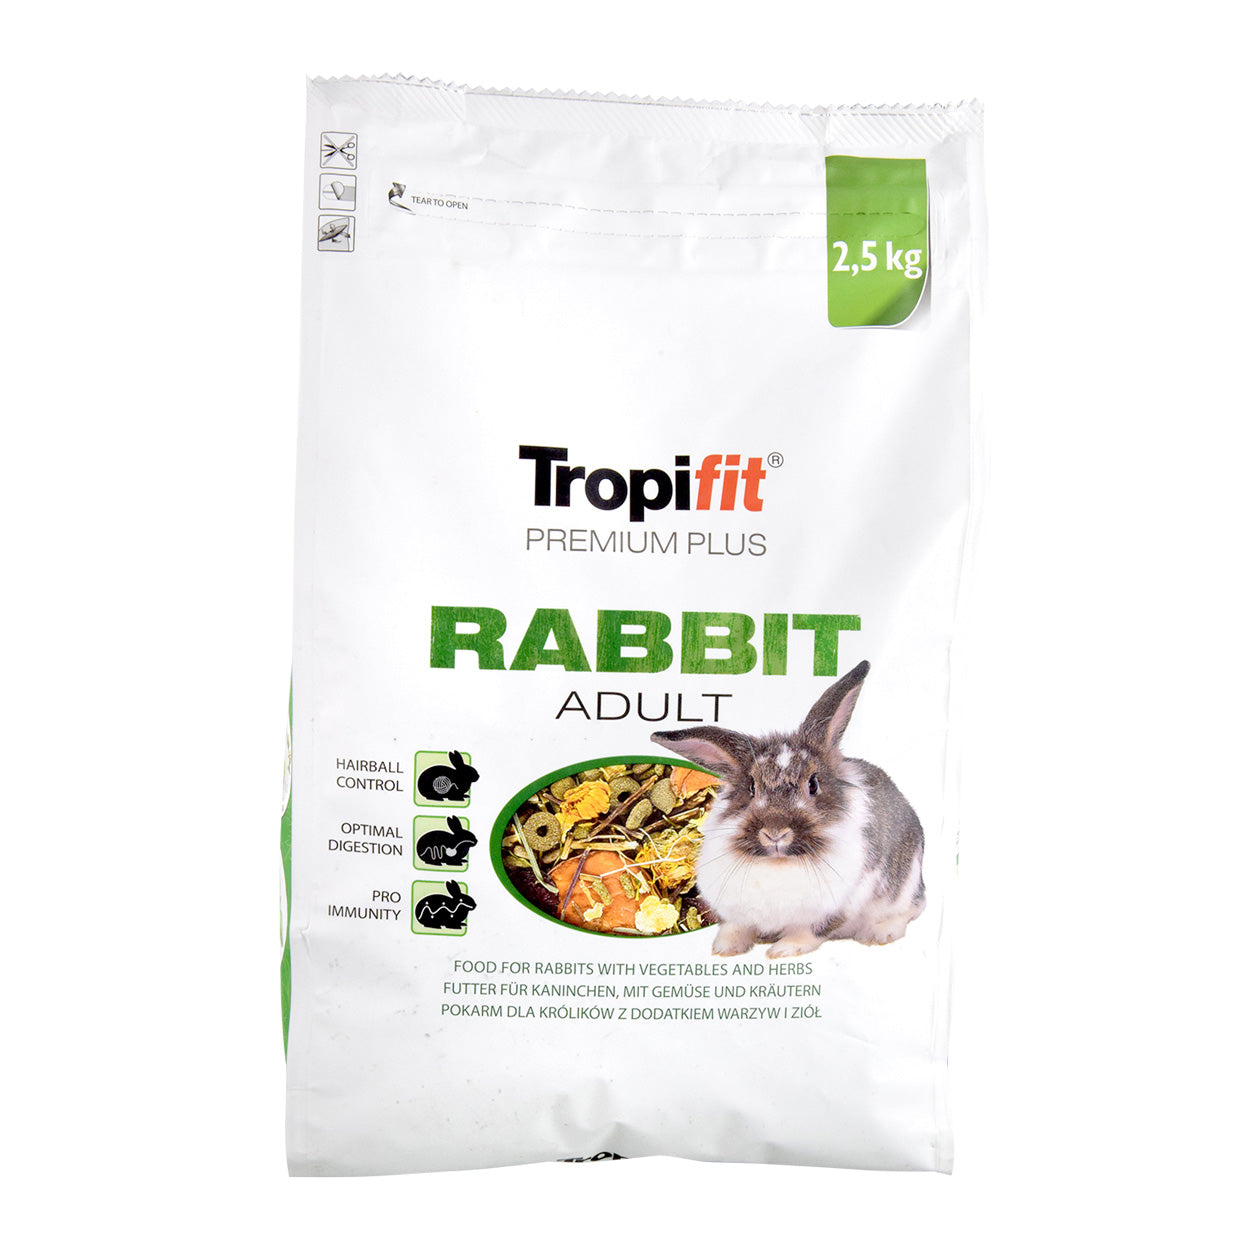 Tropifit Premium Plus Adult Rabbit - 2.5kg